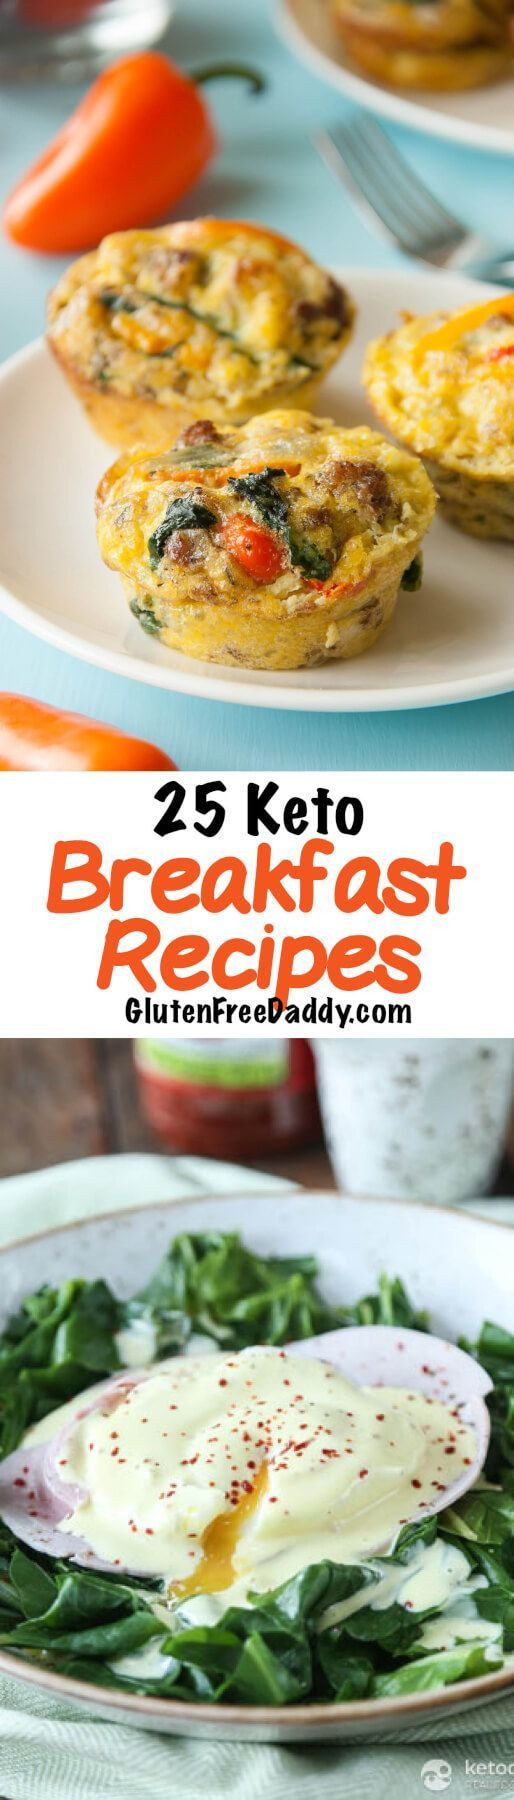 Diet Breakfast Recipes
 Best 25 Keto t breakfast ideas on Pinterest